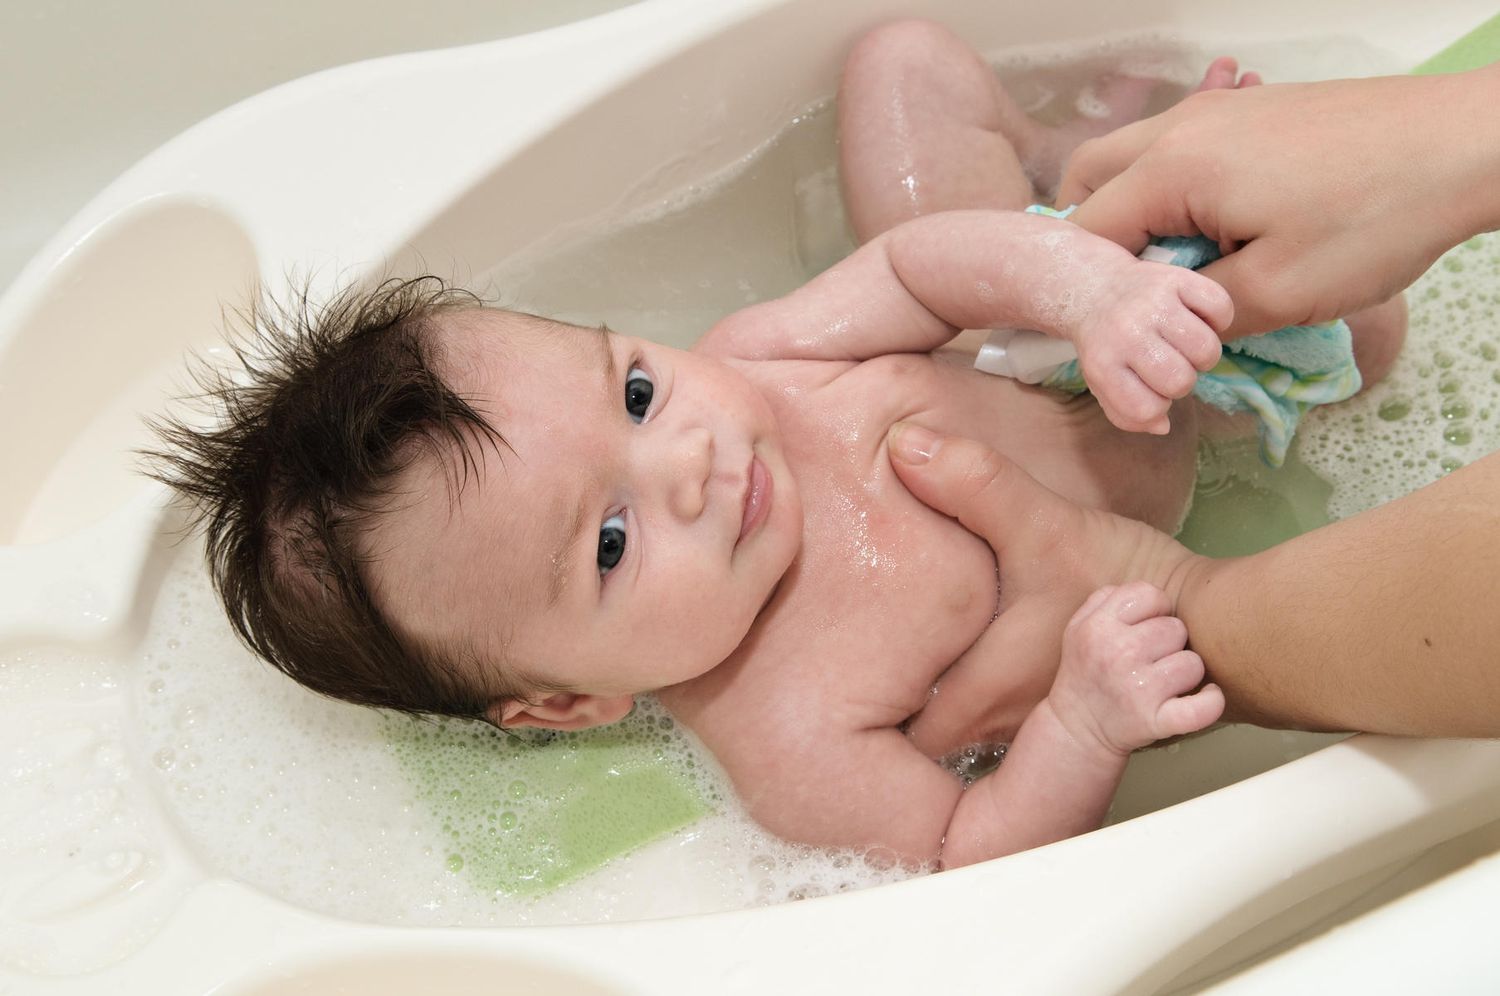 New baby getting first bath in baby bathtub